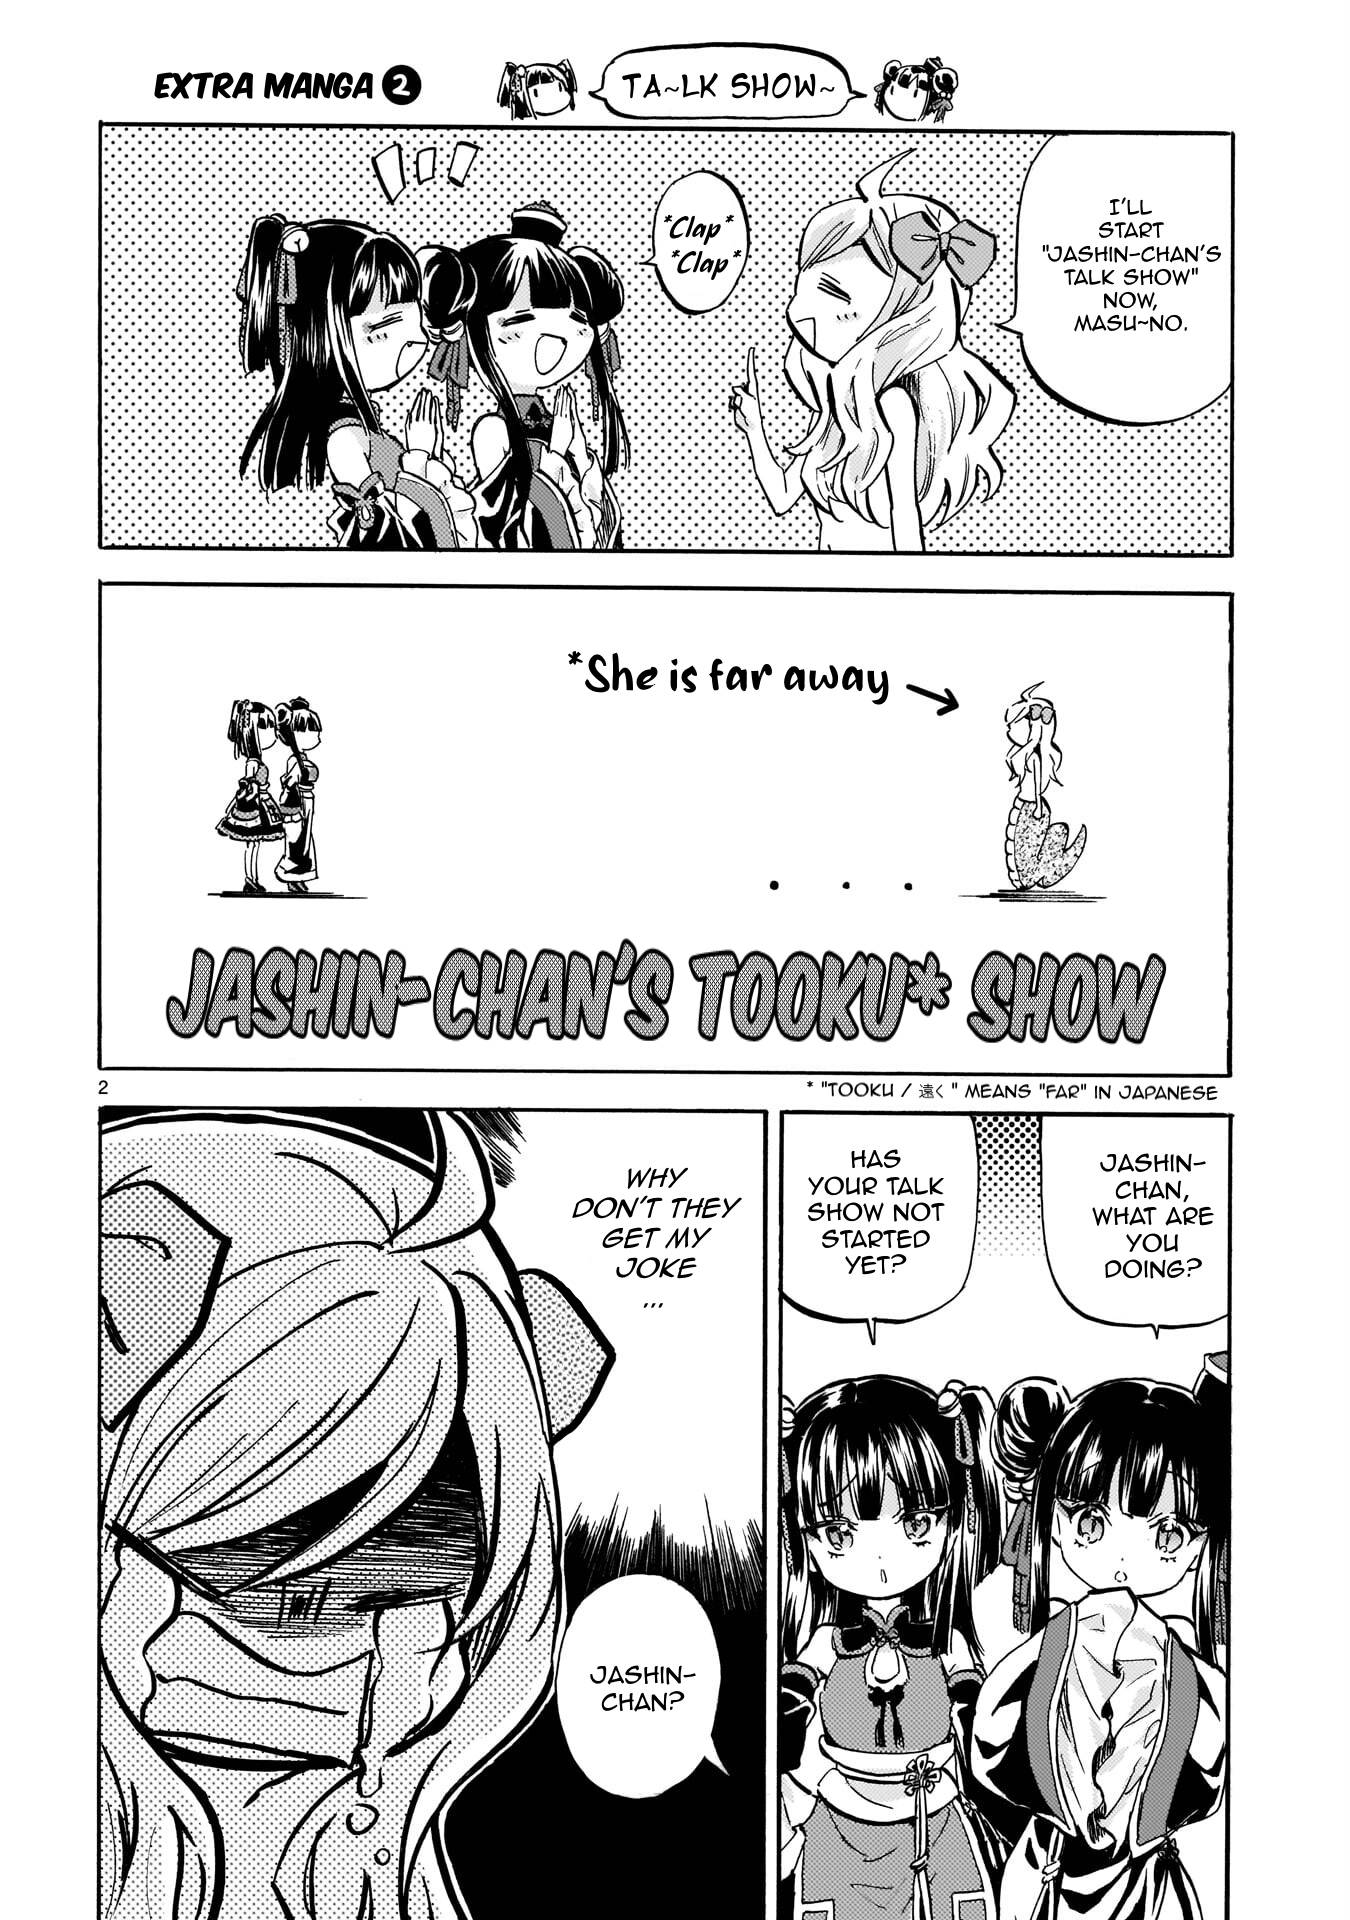 Jashin-chan Dropkick chapter 218.1 page 2